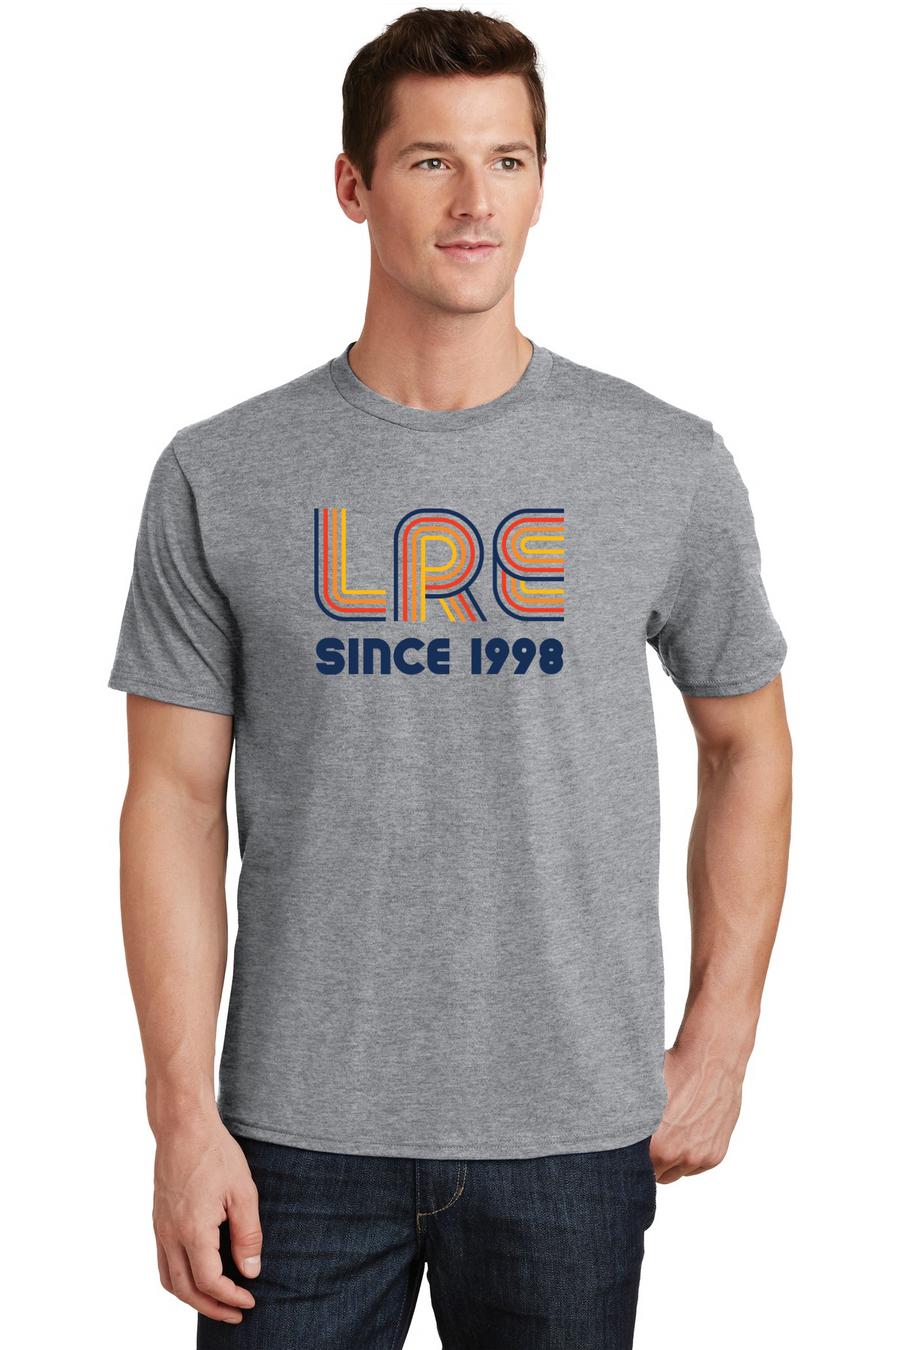 Lang Ranch Elm STAFF Spirit Wear 2023-24-Premium Soft Unisex T-Shirt LRE Since 1998 Logo